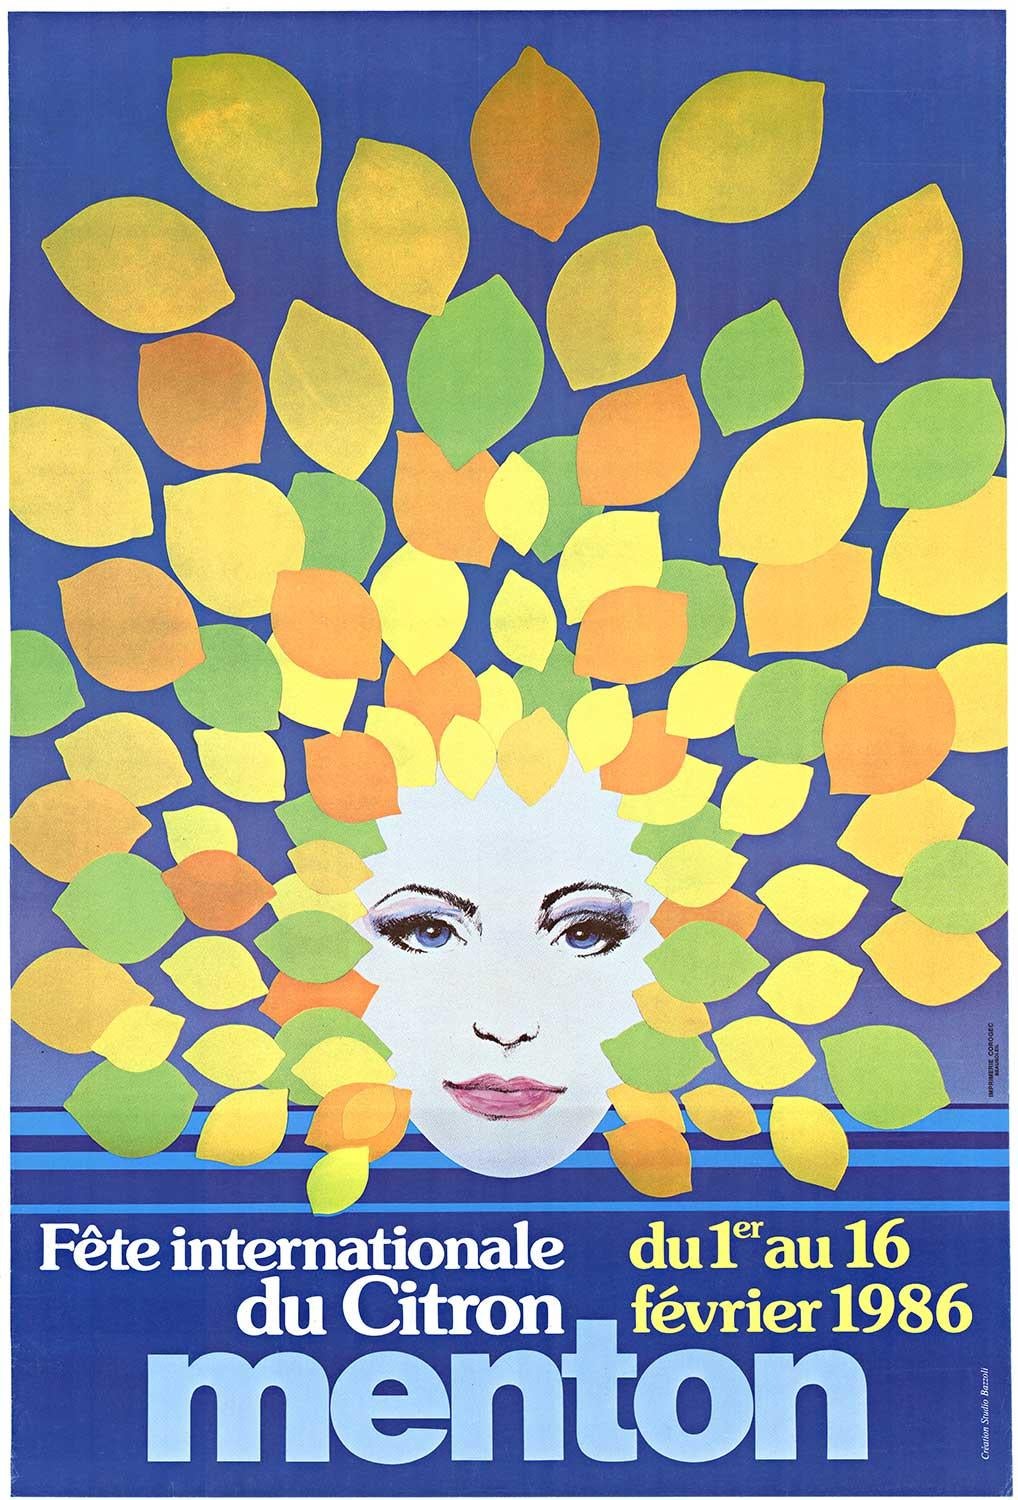 Original Menton Fete Internationale du Citron vintage poster